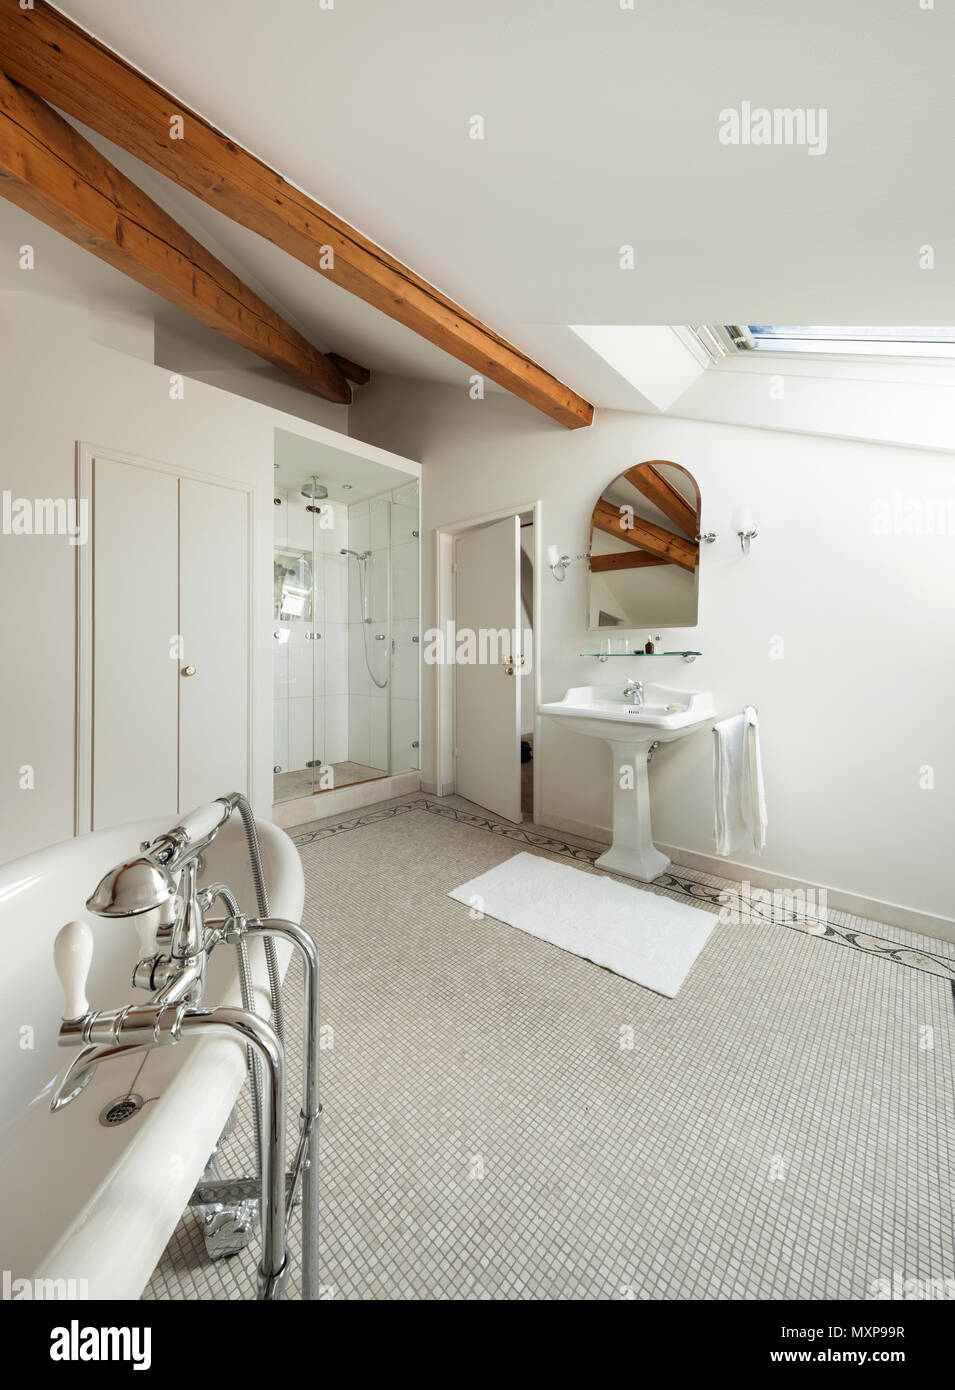 Intérieur d'une demeure de luxe, salle de bains avec douche et baignoire Banque D'Images